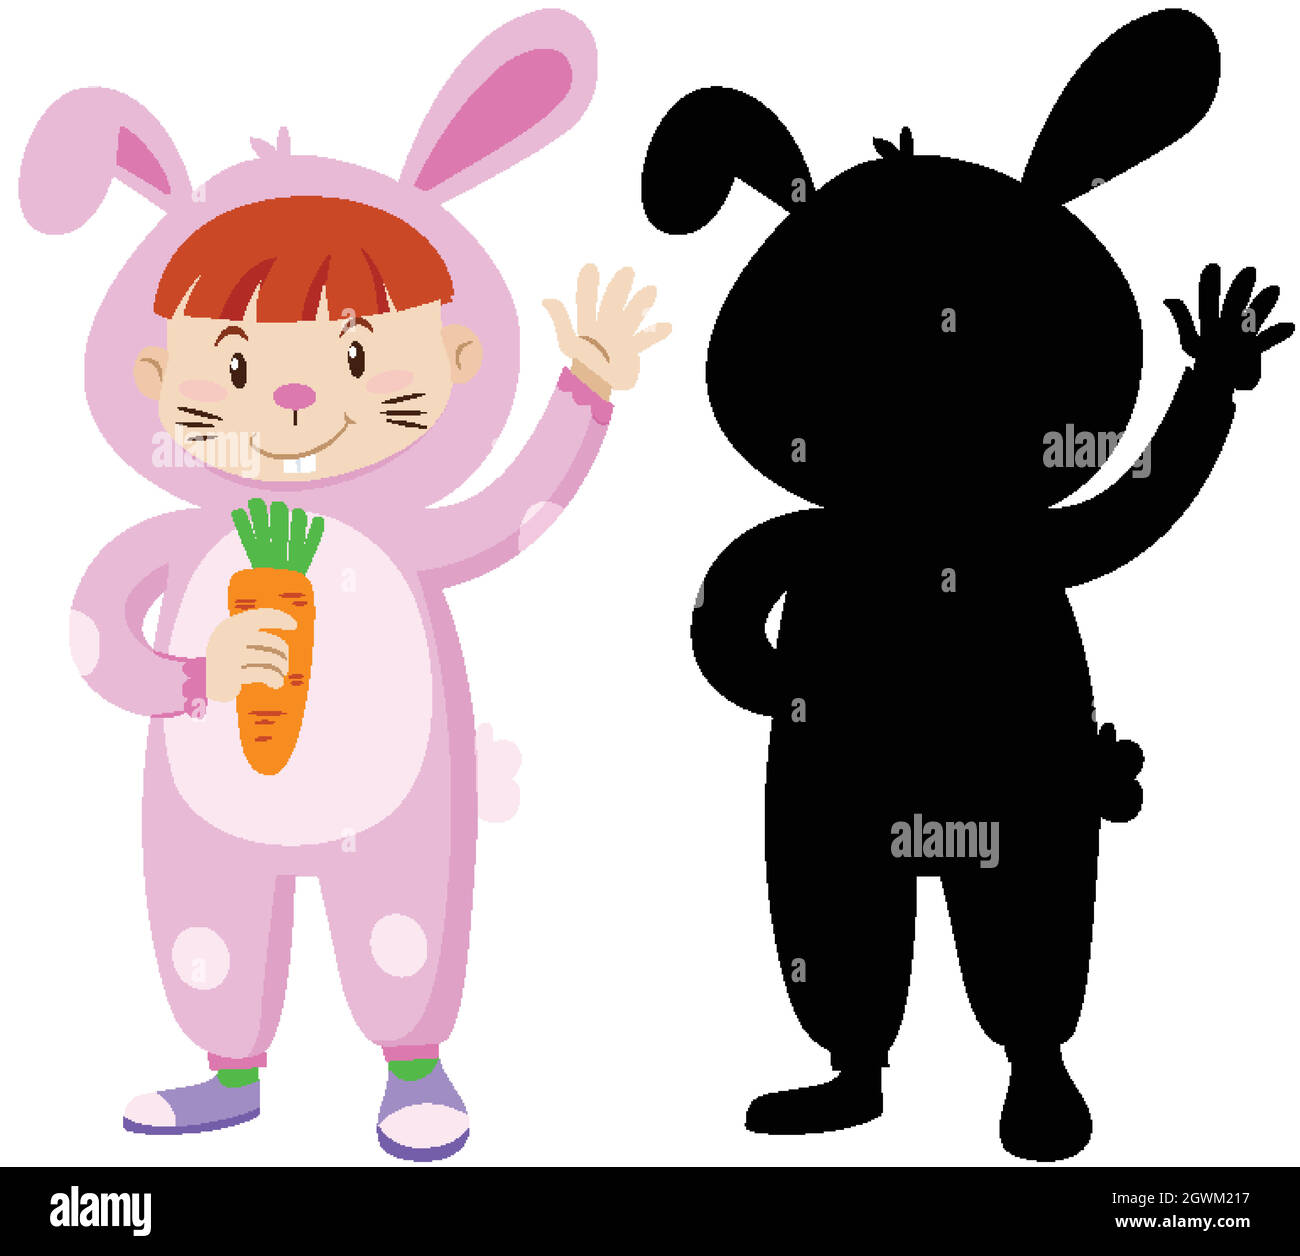 Enfant portant un costume de lapin avec sa silhouette Illustration de Vecteur